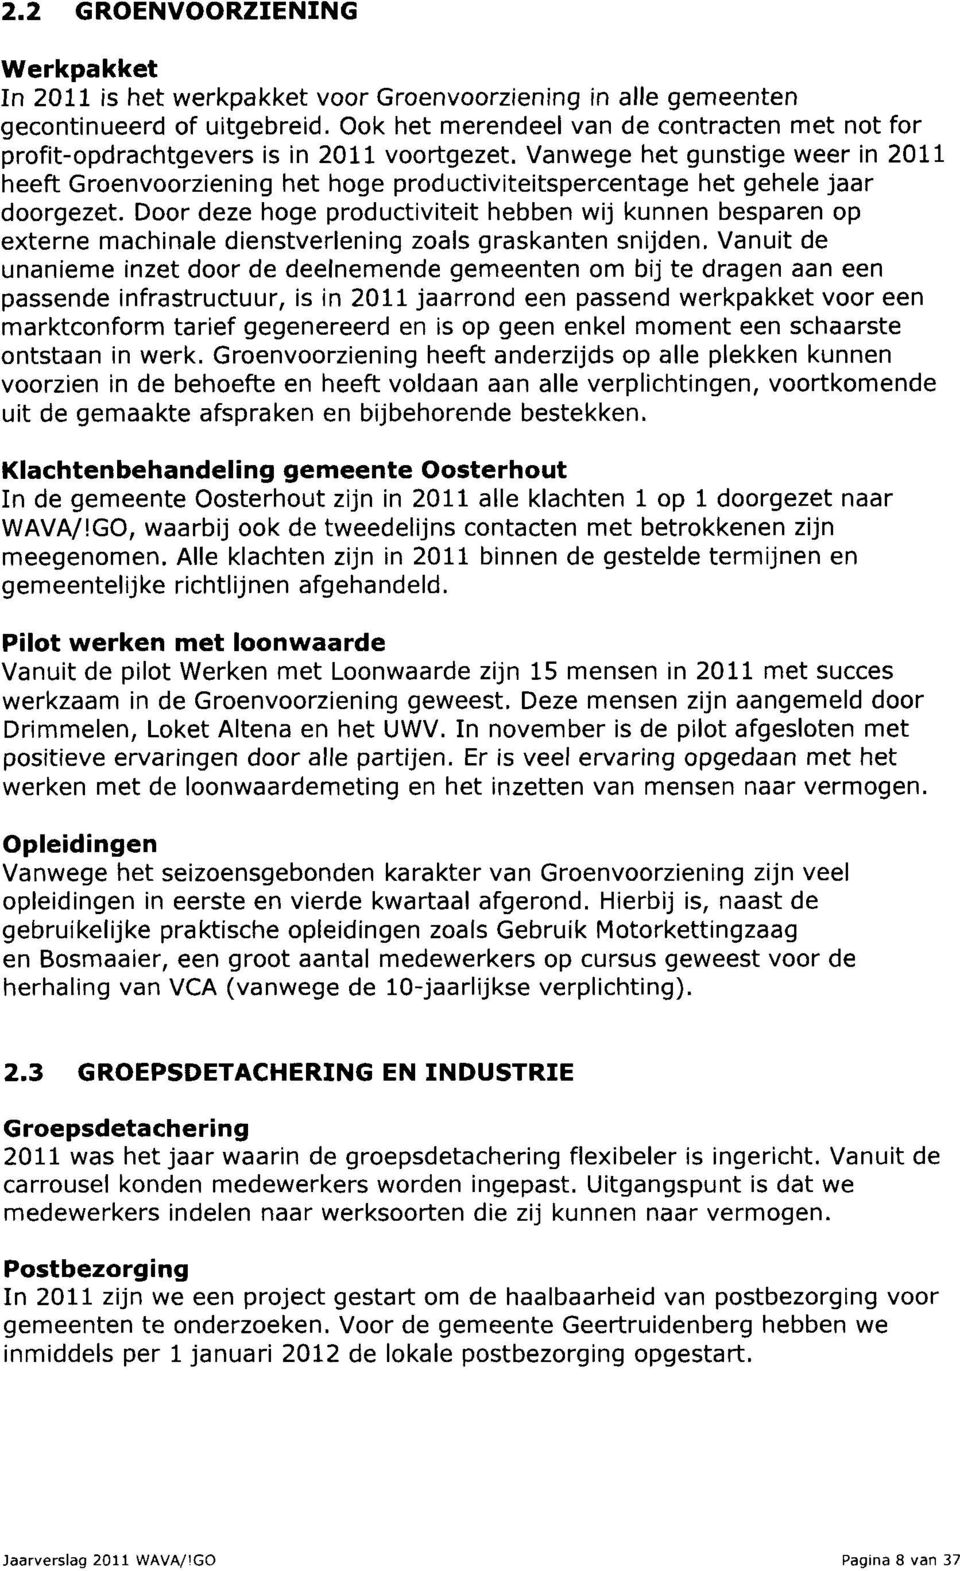 Vanwege het gunstige weer in 2011 heeft Groenvoorziening het hoge productiviteitspercentage het gehele jaar doorgezet.